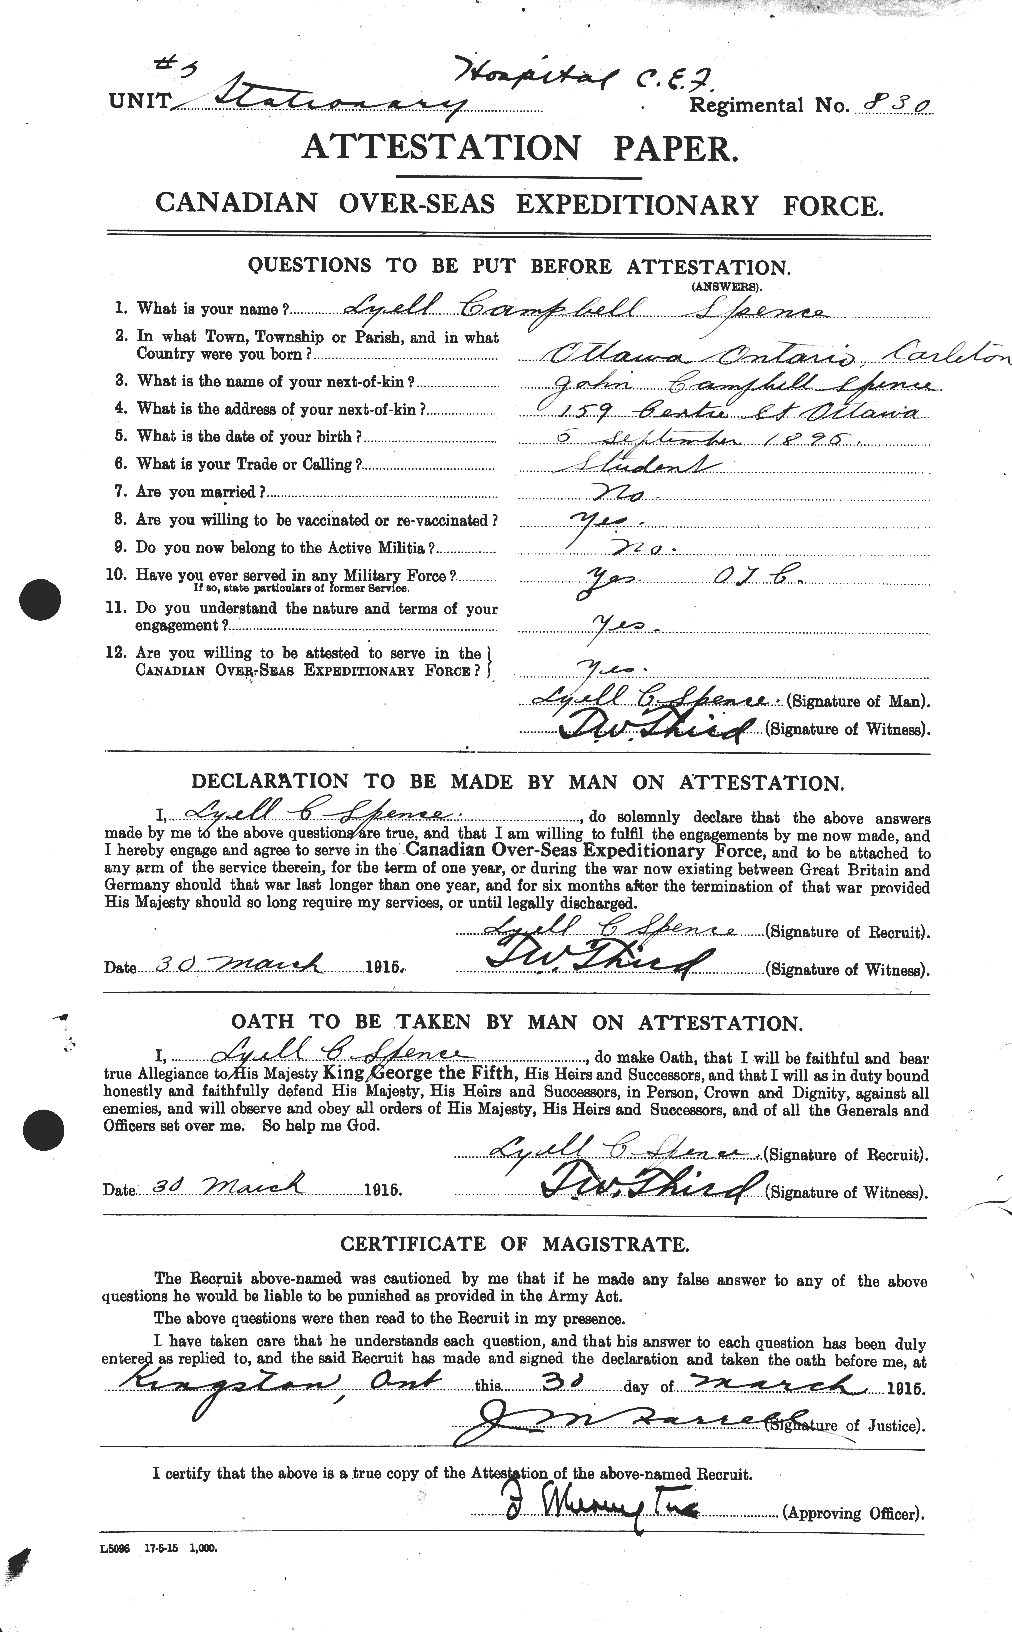 Dossiers du Personnel de la Première Guerre mondiale - CEC 621393a